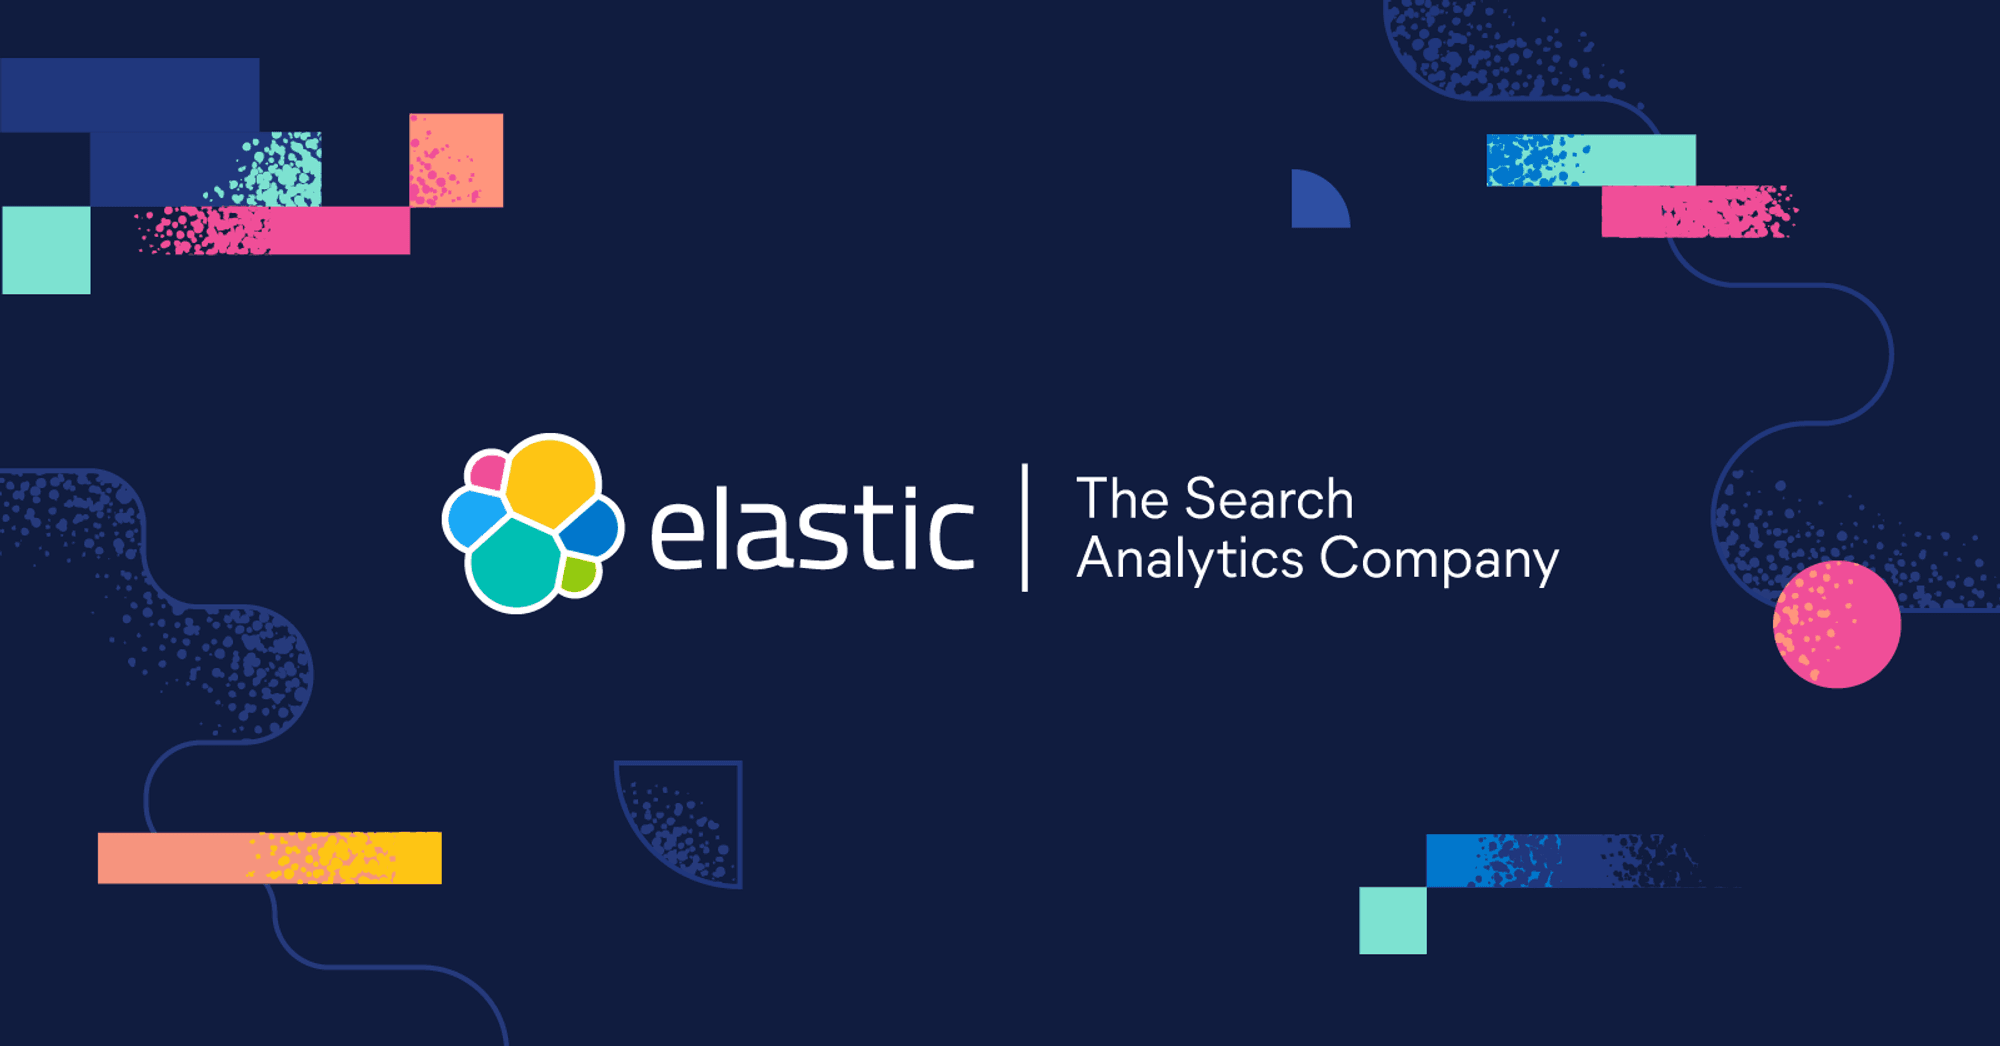 Elastic — The Search AI Company